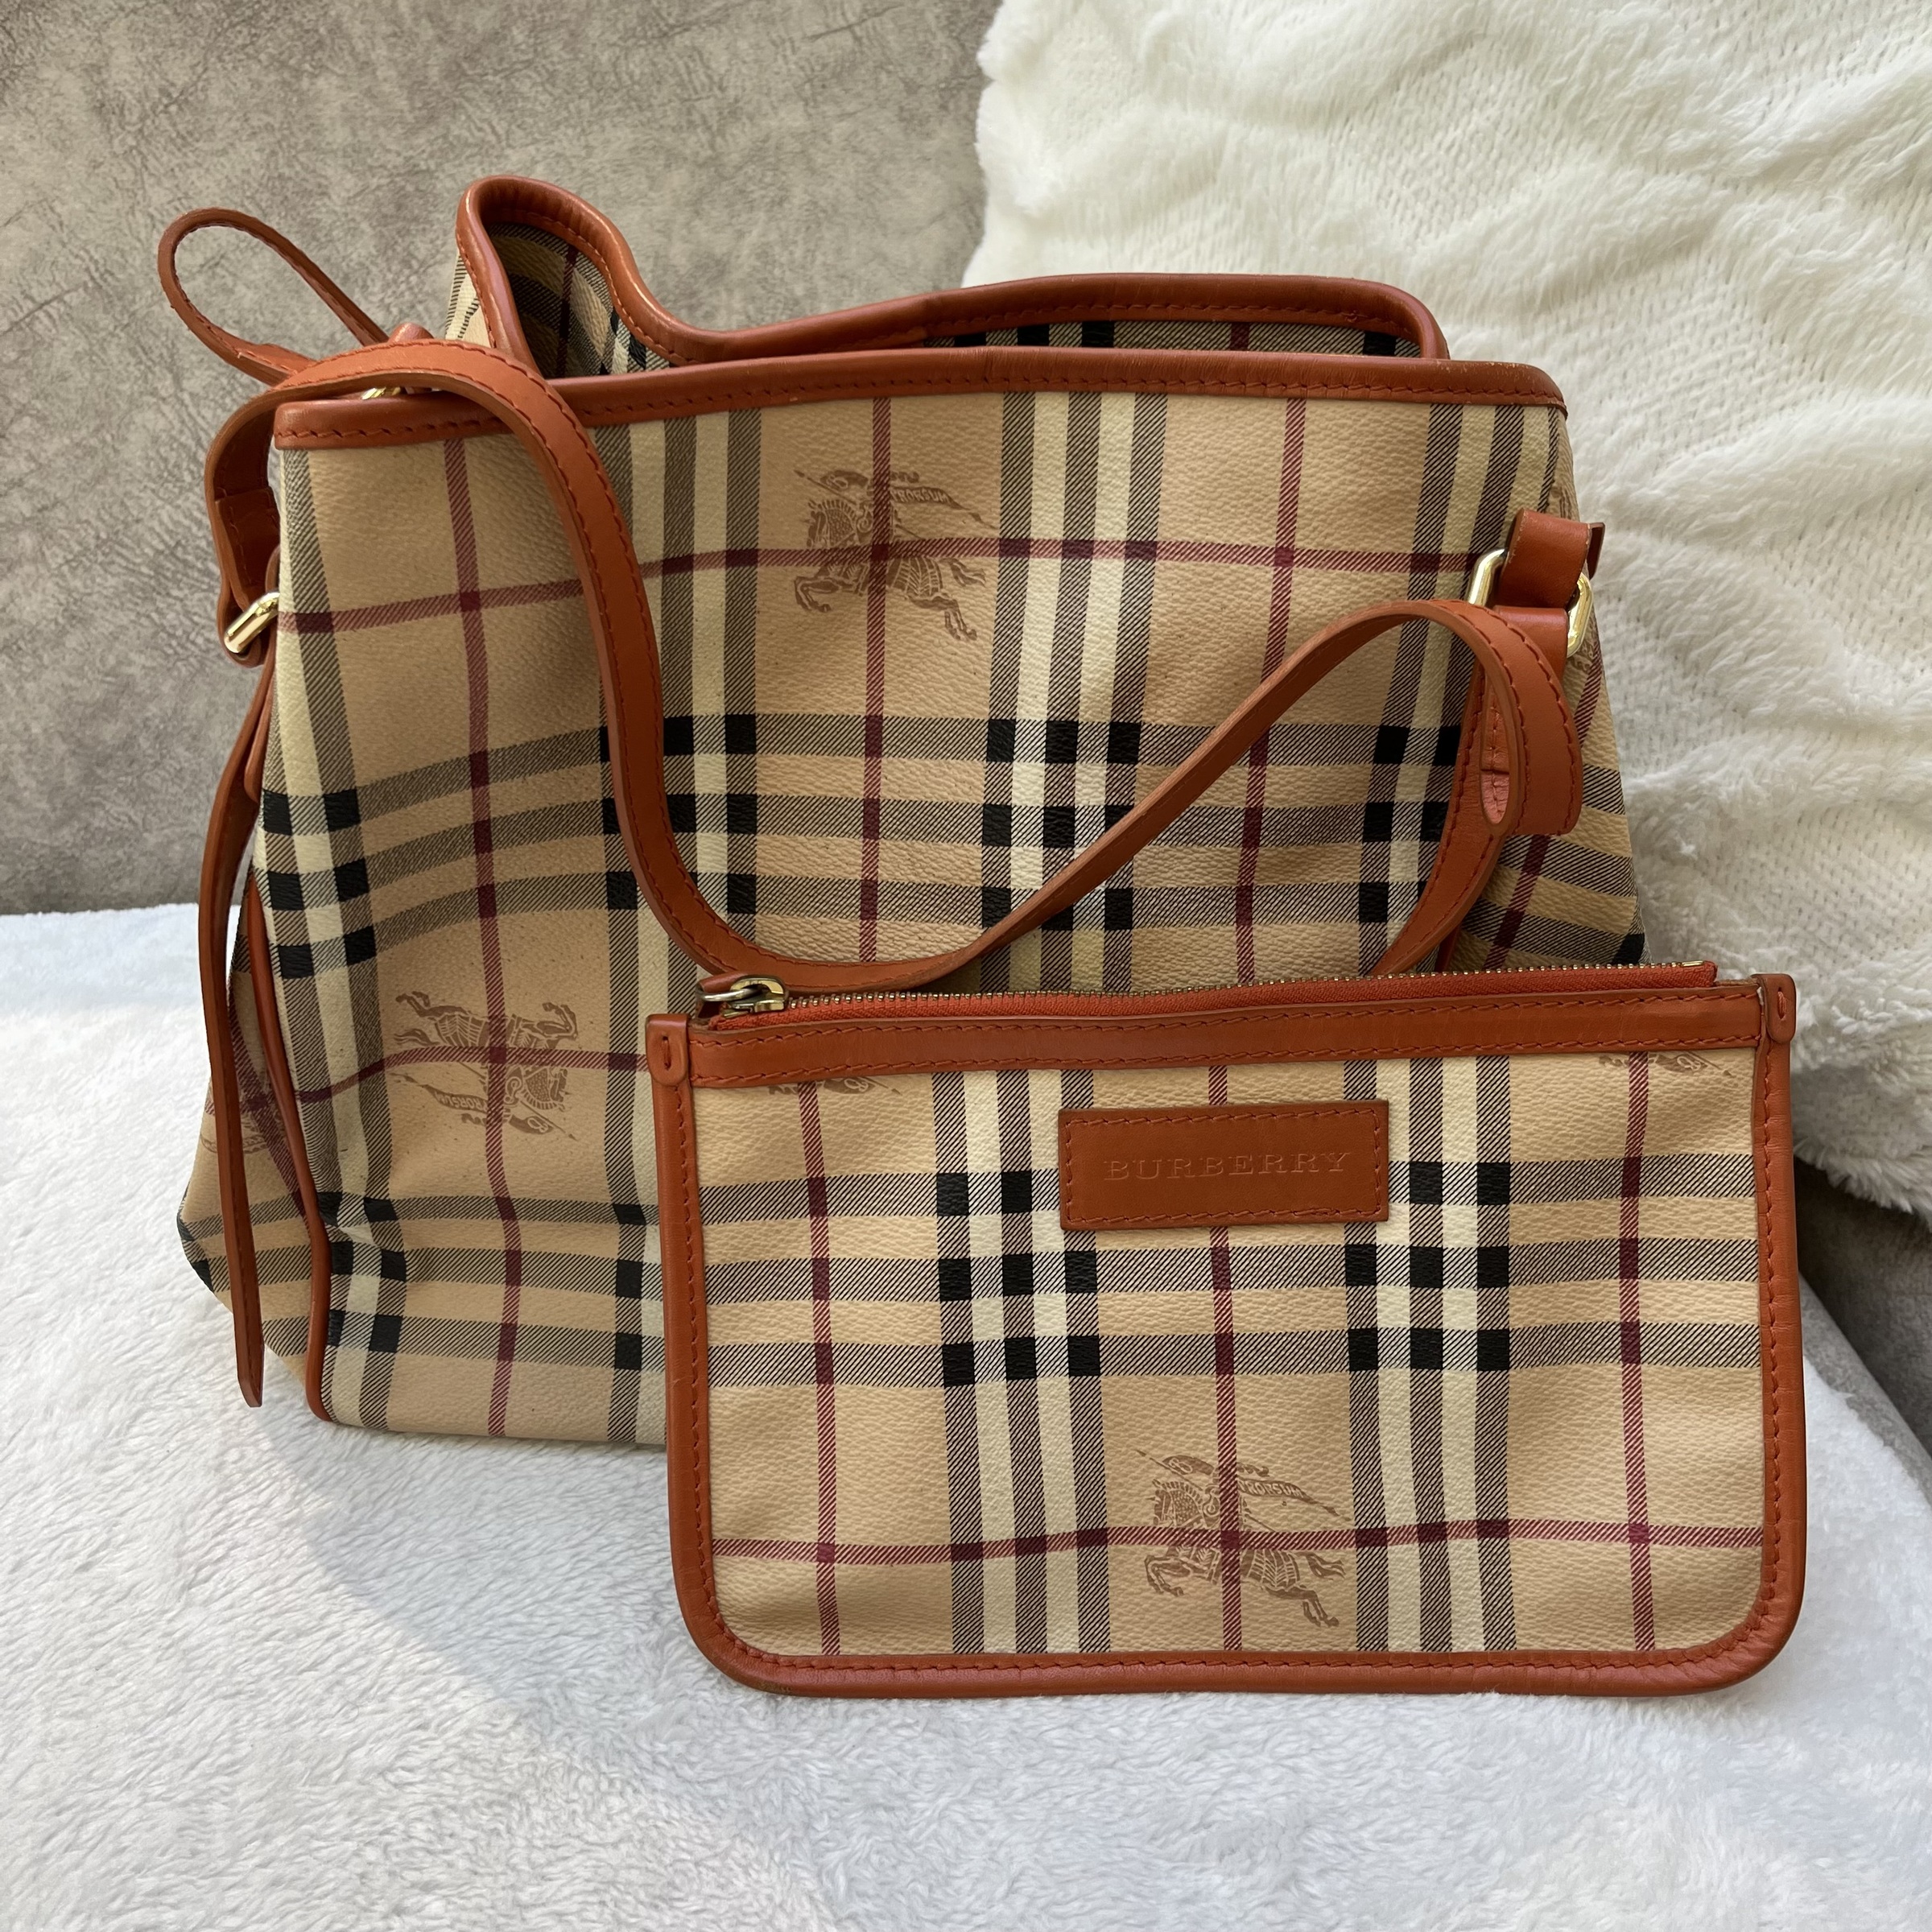 Louis Vuitton Damier Azur Berkeley Shoulder Bag – The Don's Luxury